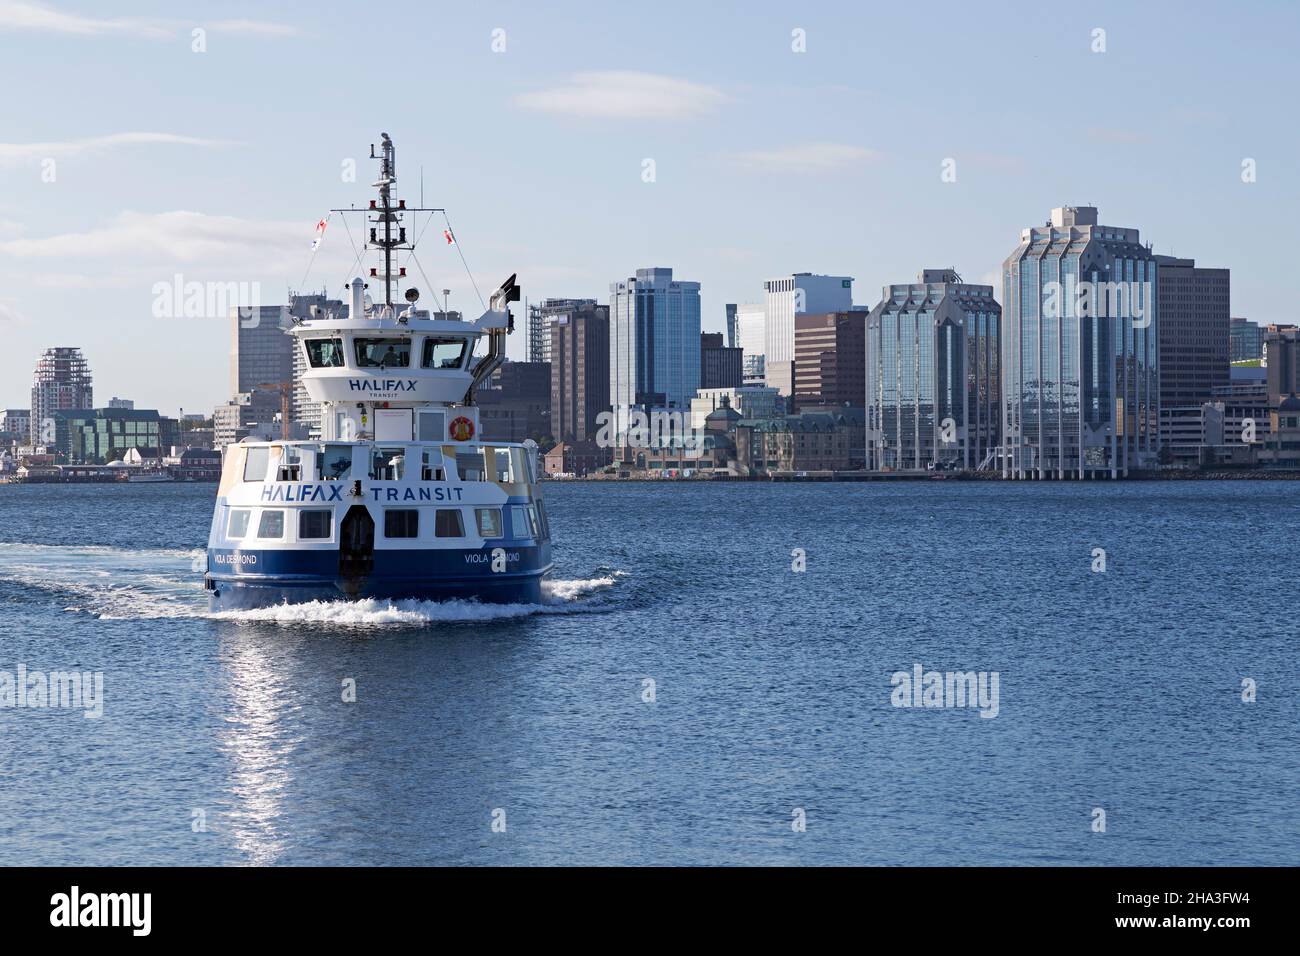 La franry Halifax-Dartmouth traverse le port de Halifax, en Nouvelle-Écosse, au Canada. Banque D'Images